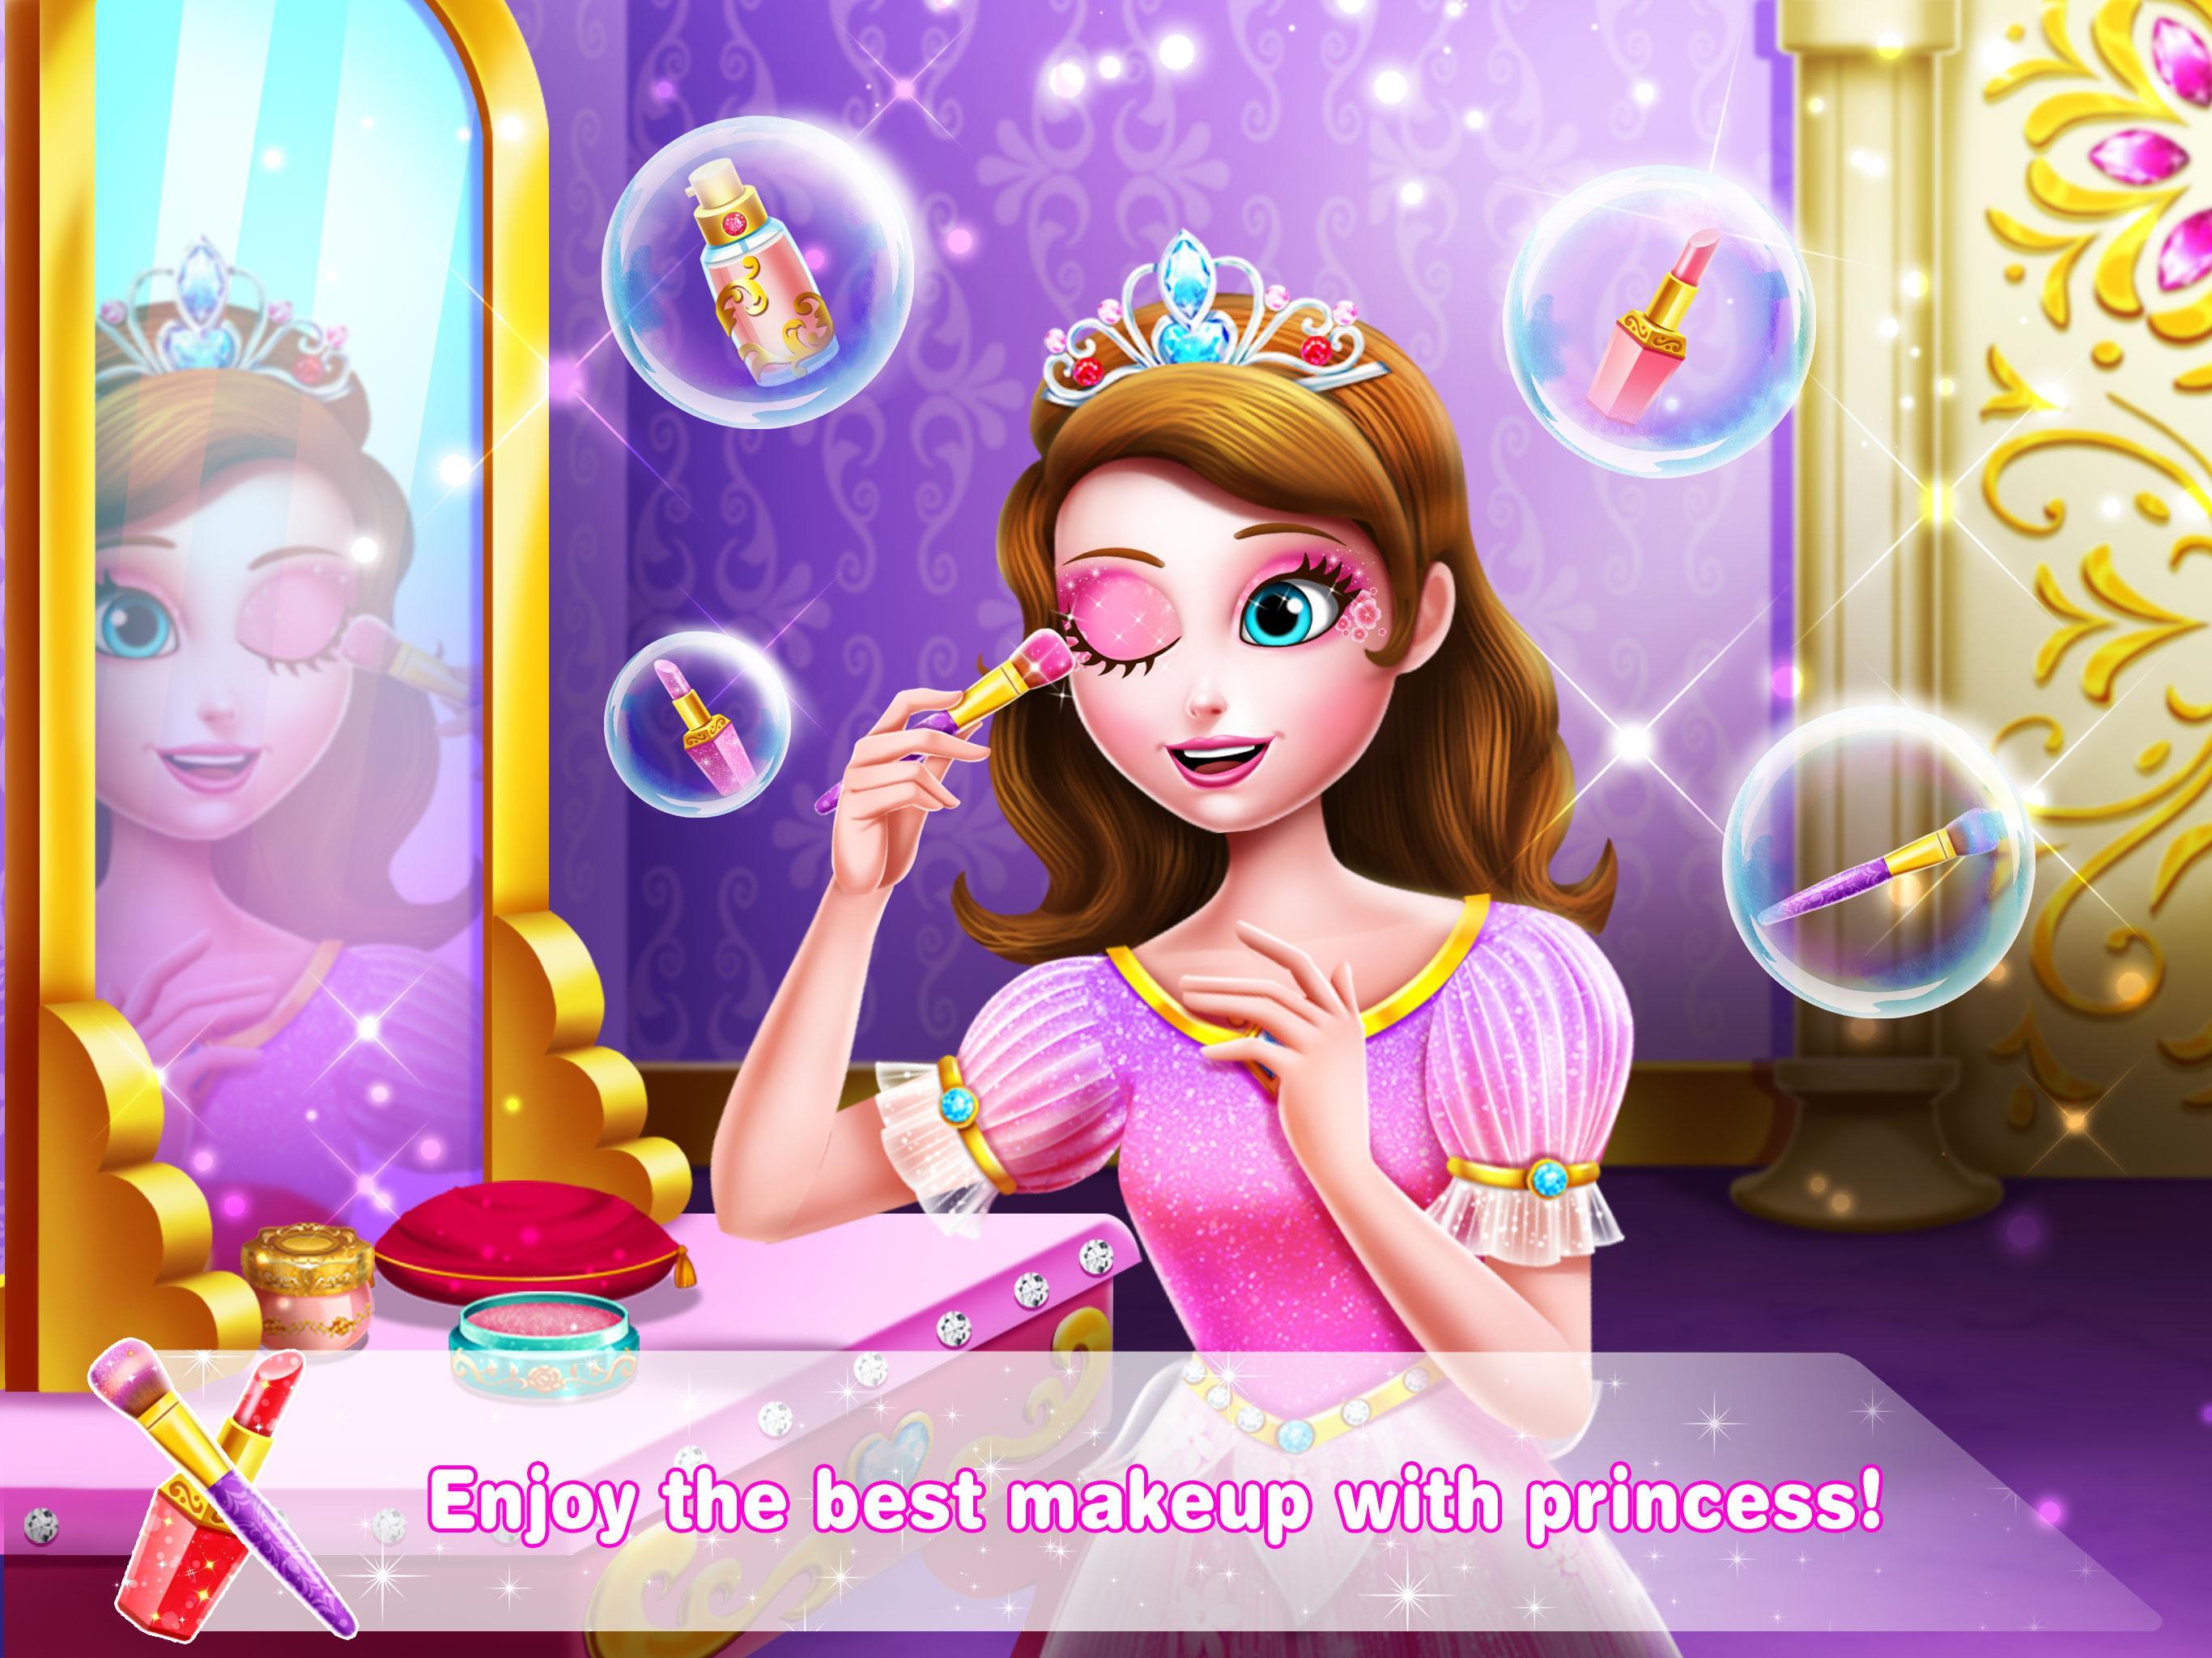 Включи королеву игру. Зеркало принцессы. Принцесса с единорожкой. Принцесс 8.1. The Unicorn Princess игра.